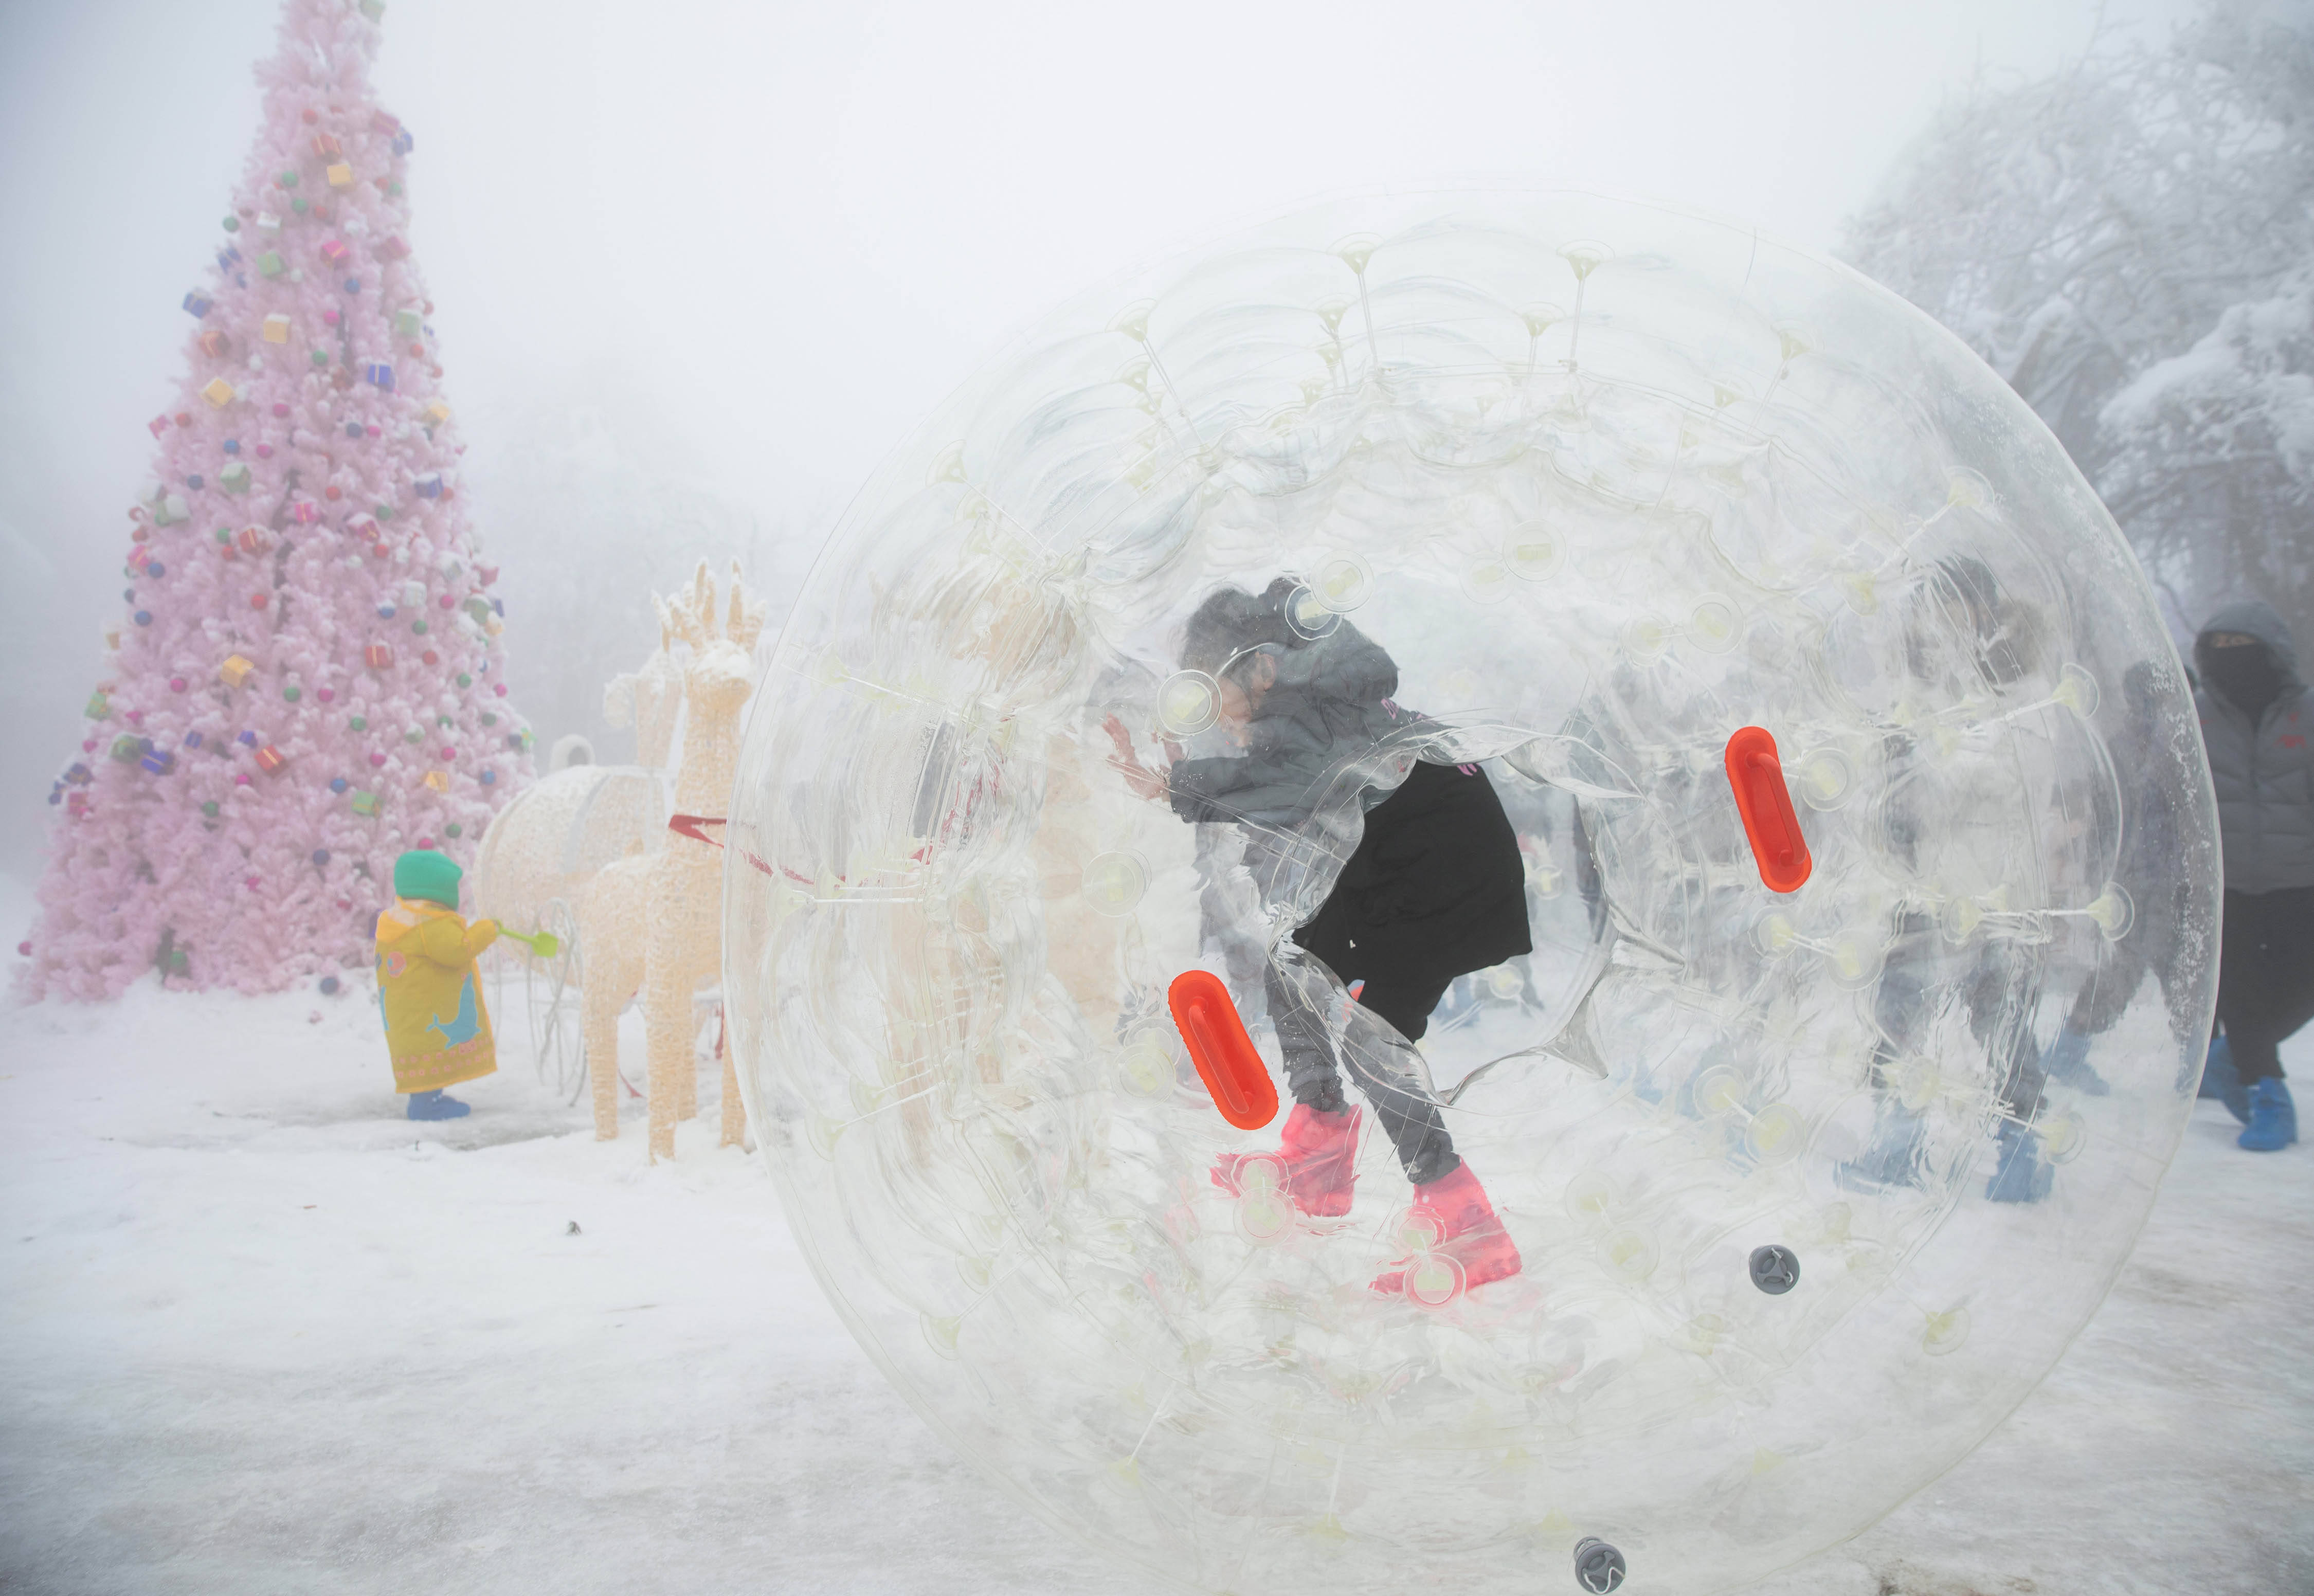 12月12日,在峨眉山雷洞坪滑雪区,一位小朋友在玩雪地悠波球.